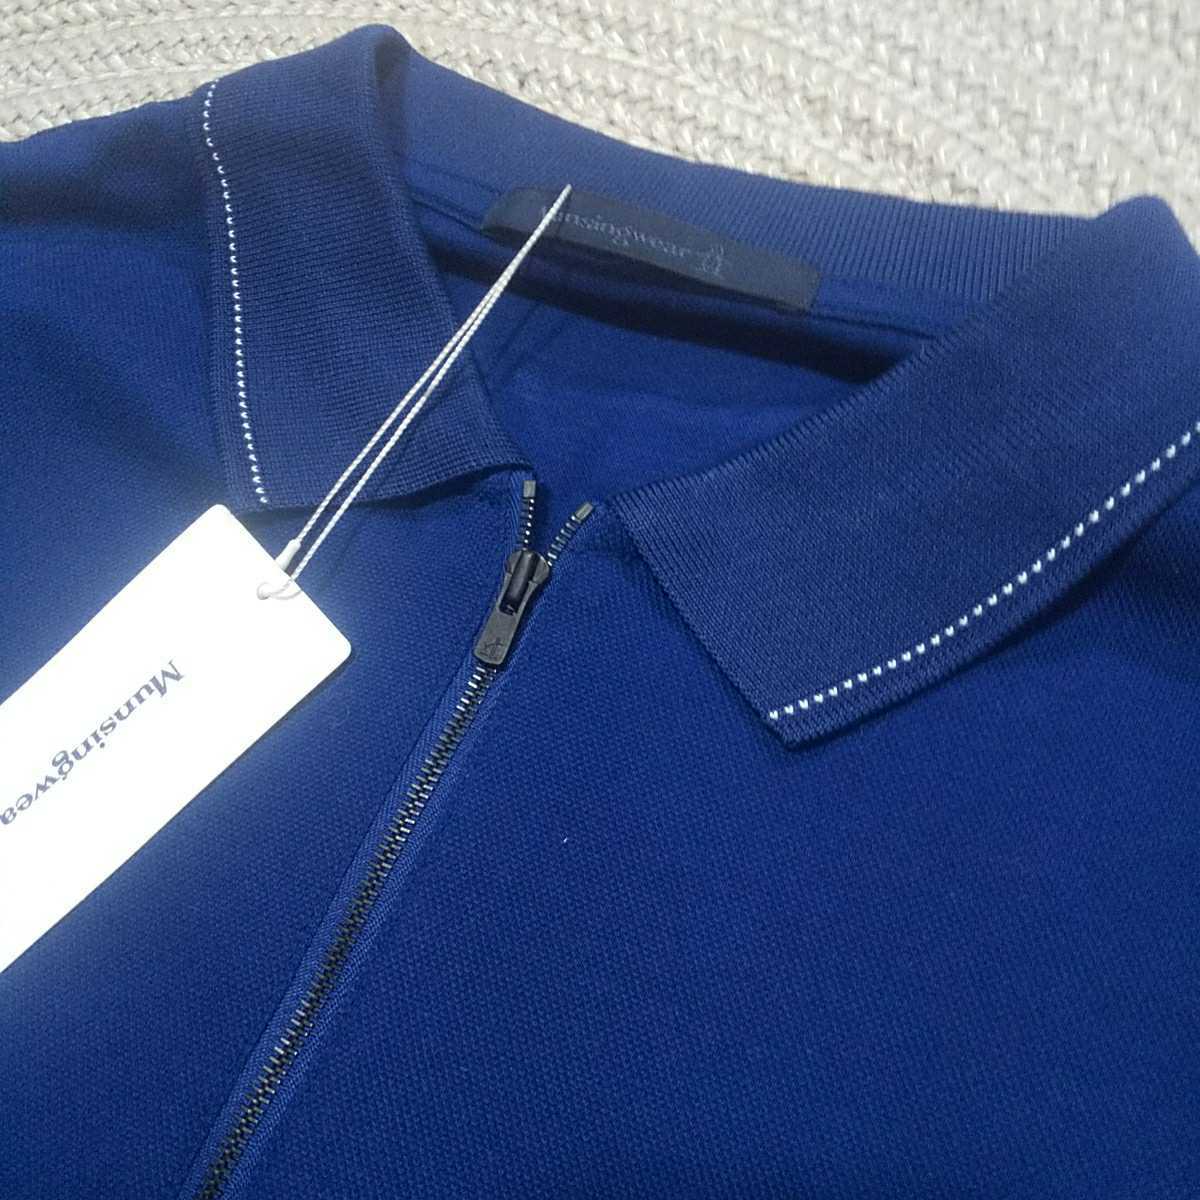  new goods made in Japan regular price 27500 Munsingwear Munsing wear 7 minute height half Zip polo-shirt LL navy blue nails Golf men's relax wear 